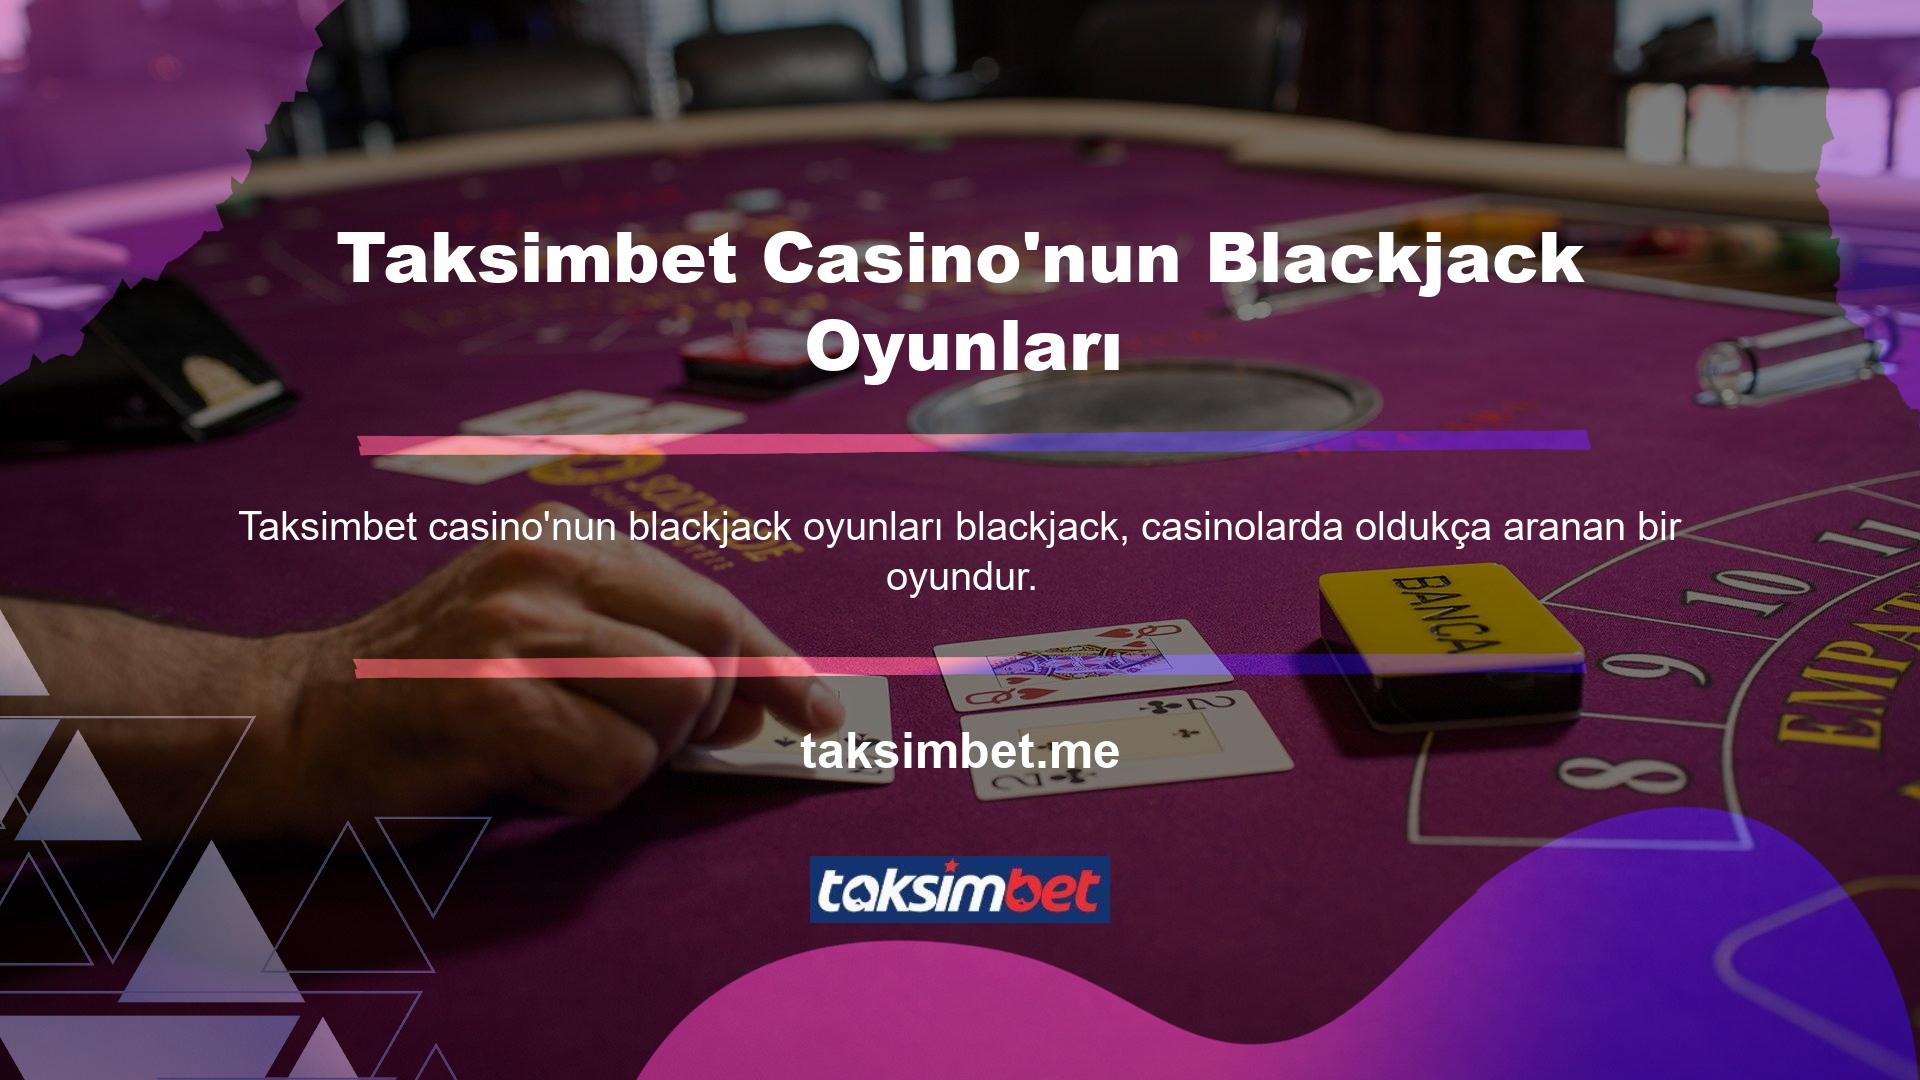 Taksimbet, çok çeşitli blackjack varyasyonlarına sahiptir ve bu da onu ilgi çekici bir casino seçeneği haline getirmektedir